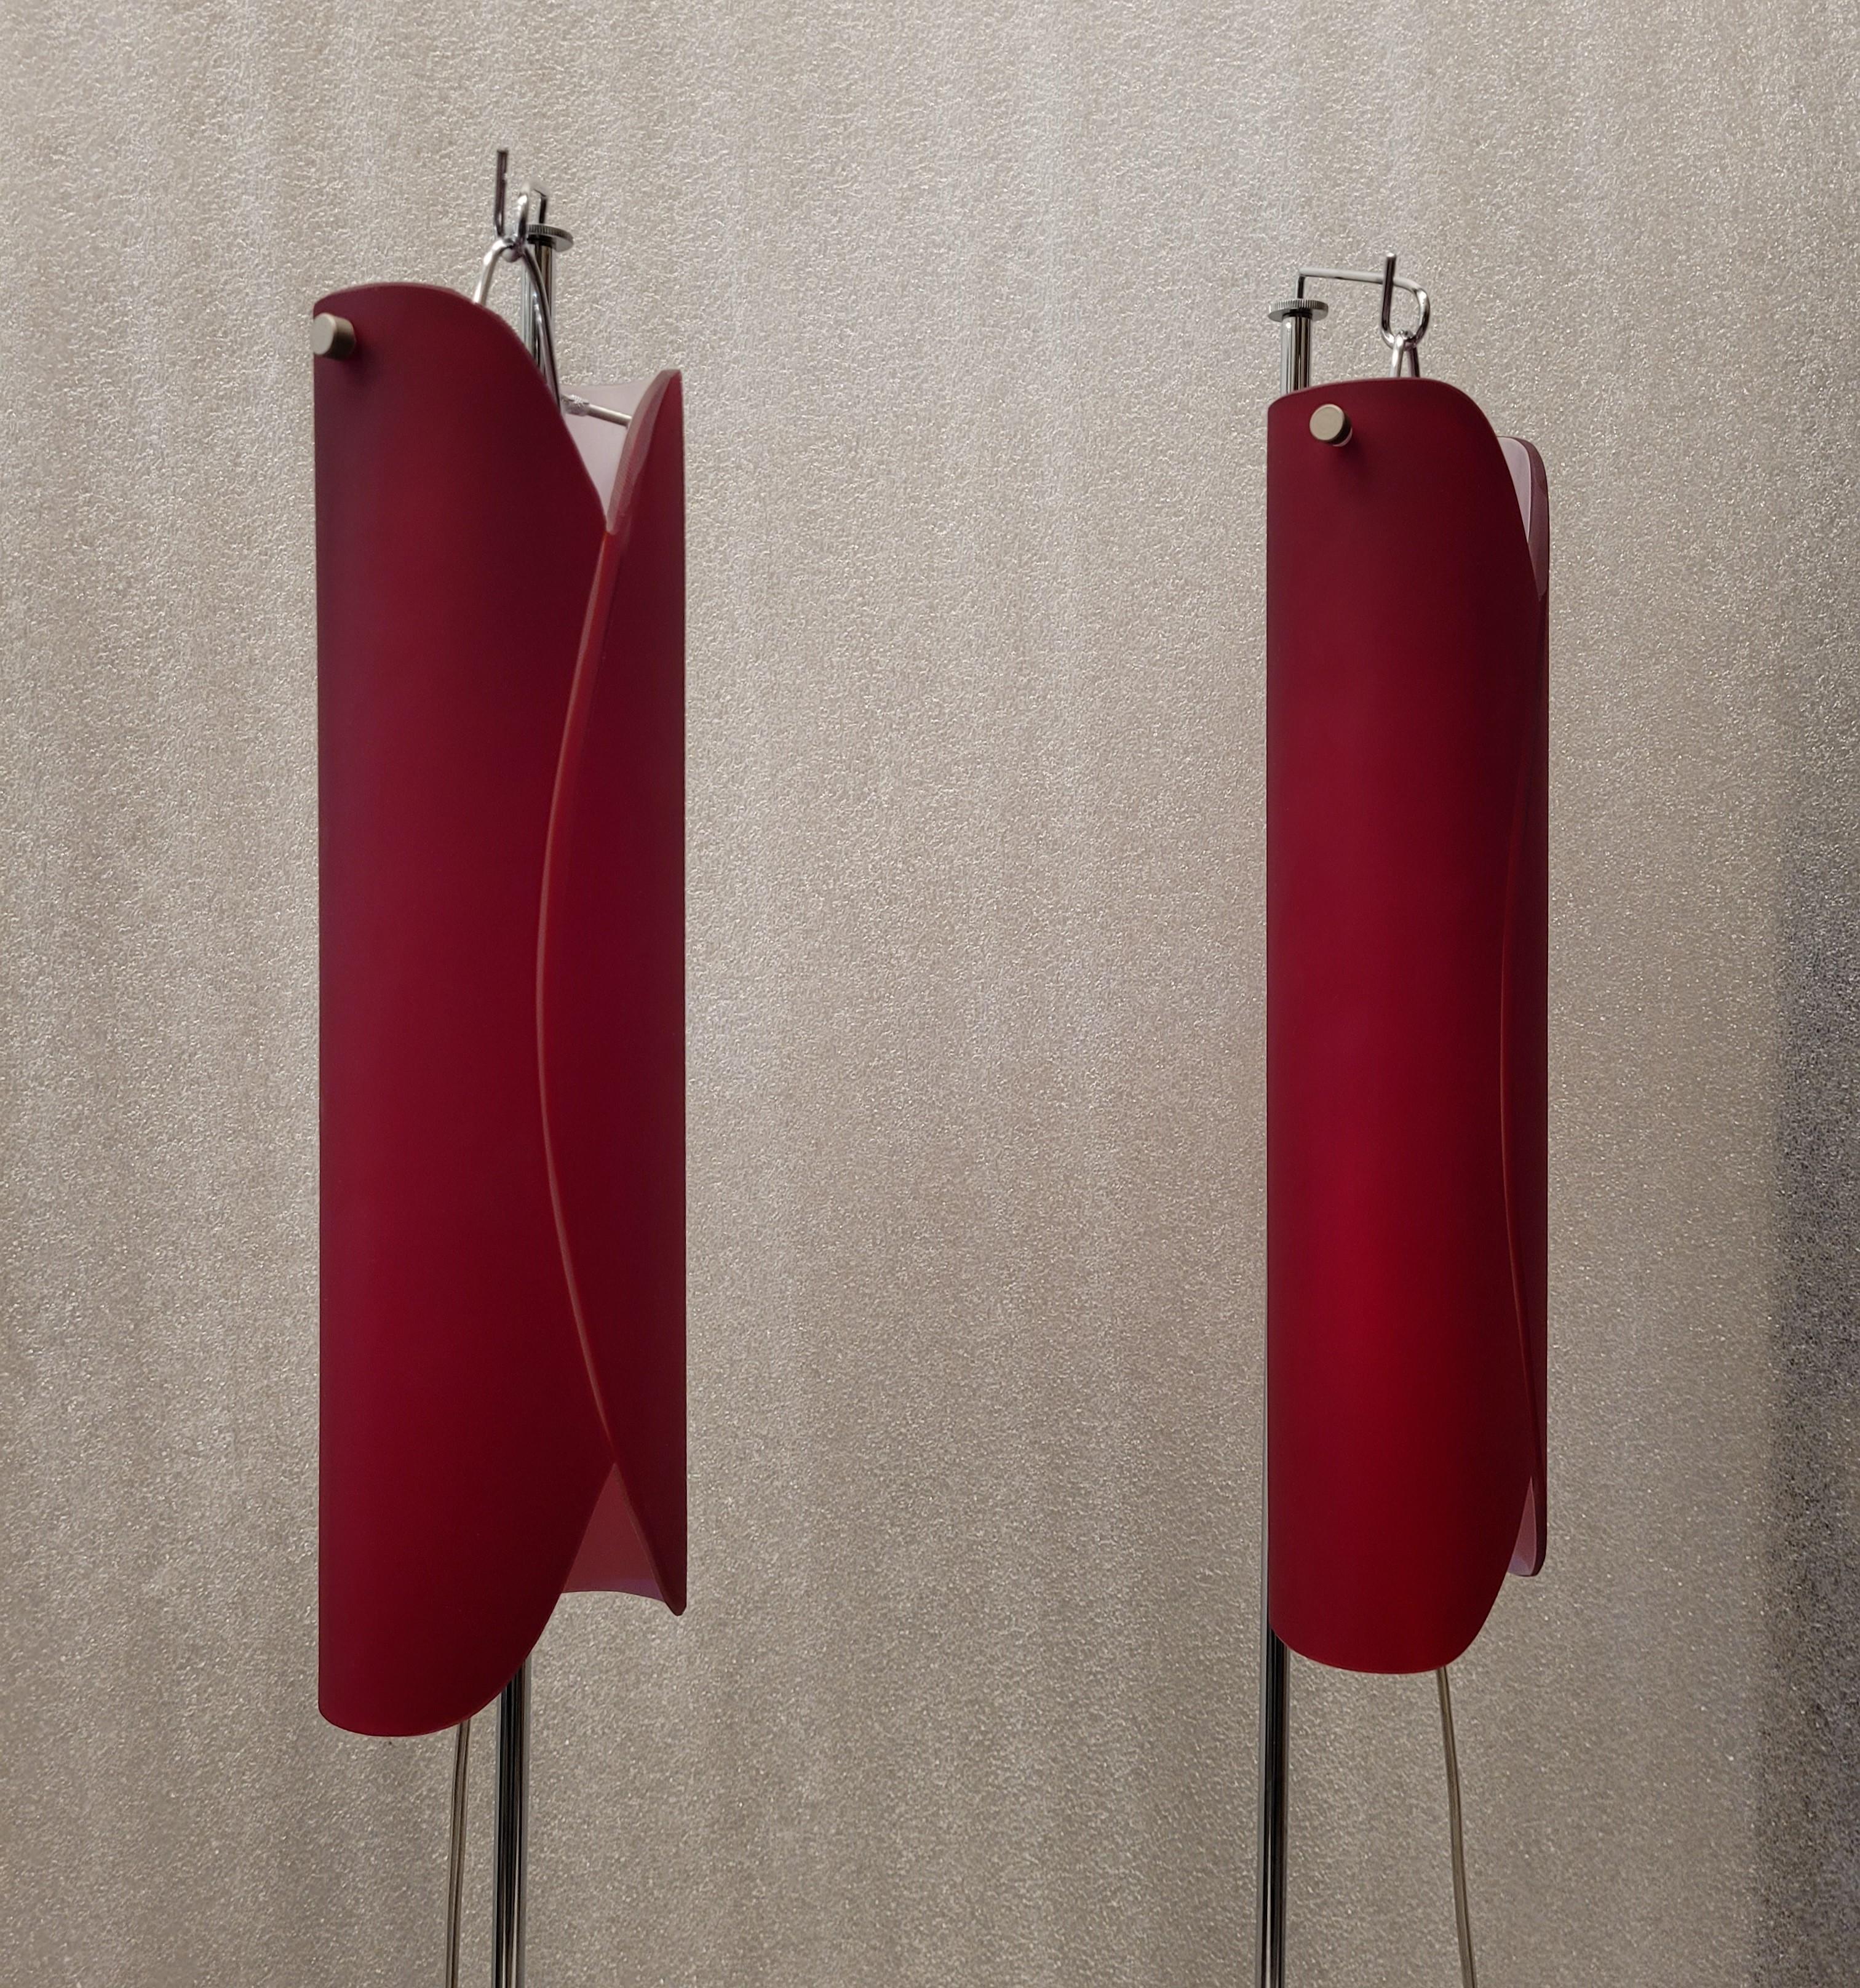 Hervorragendes Paar Stehlampen aus Stahl und rotem Murano-Glas, hergestellt von der Fabrik Vivarini für Roche Bobois. Der in seiner Konzeption und Struktur exquisite Bildschirm besteht aus gewölbtem, außen rotem und innen weißem Glas in Form einer